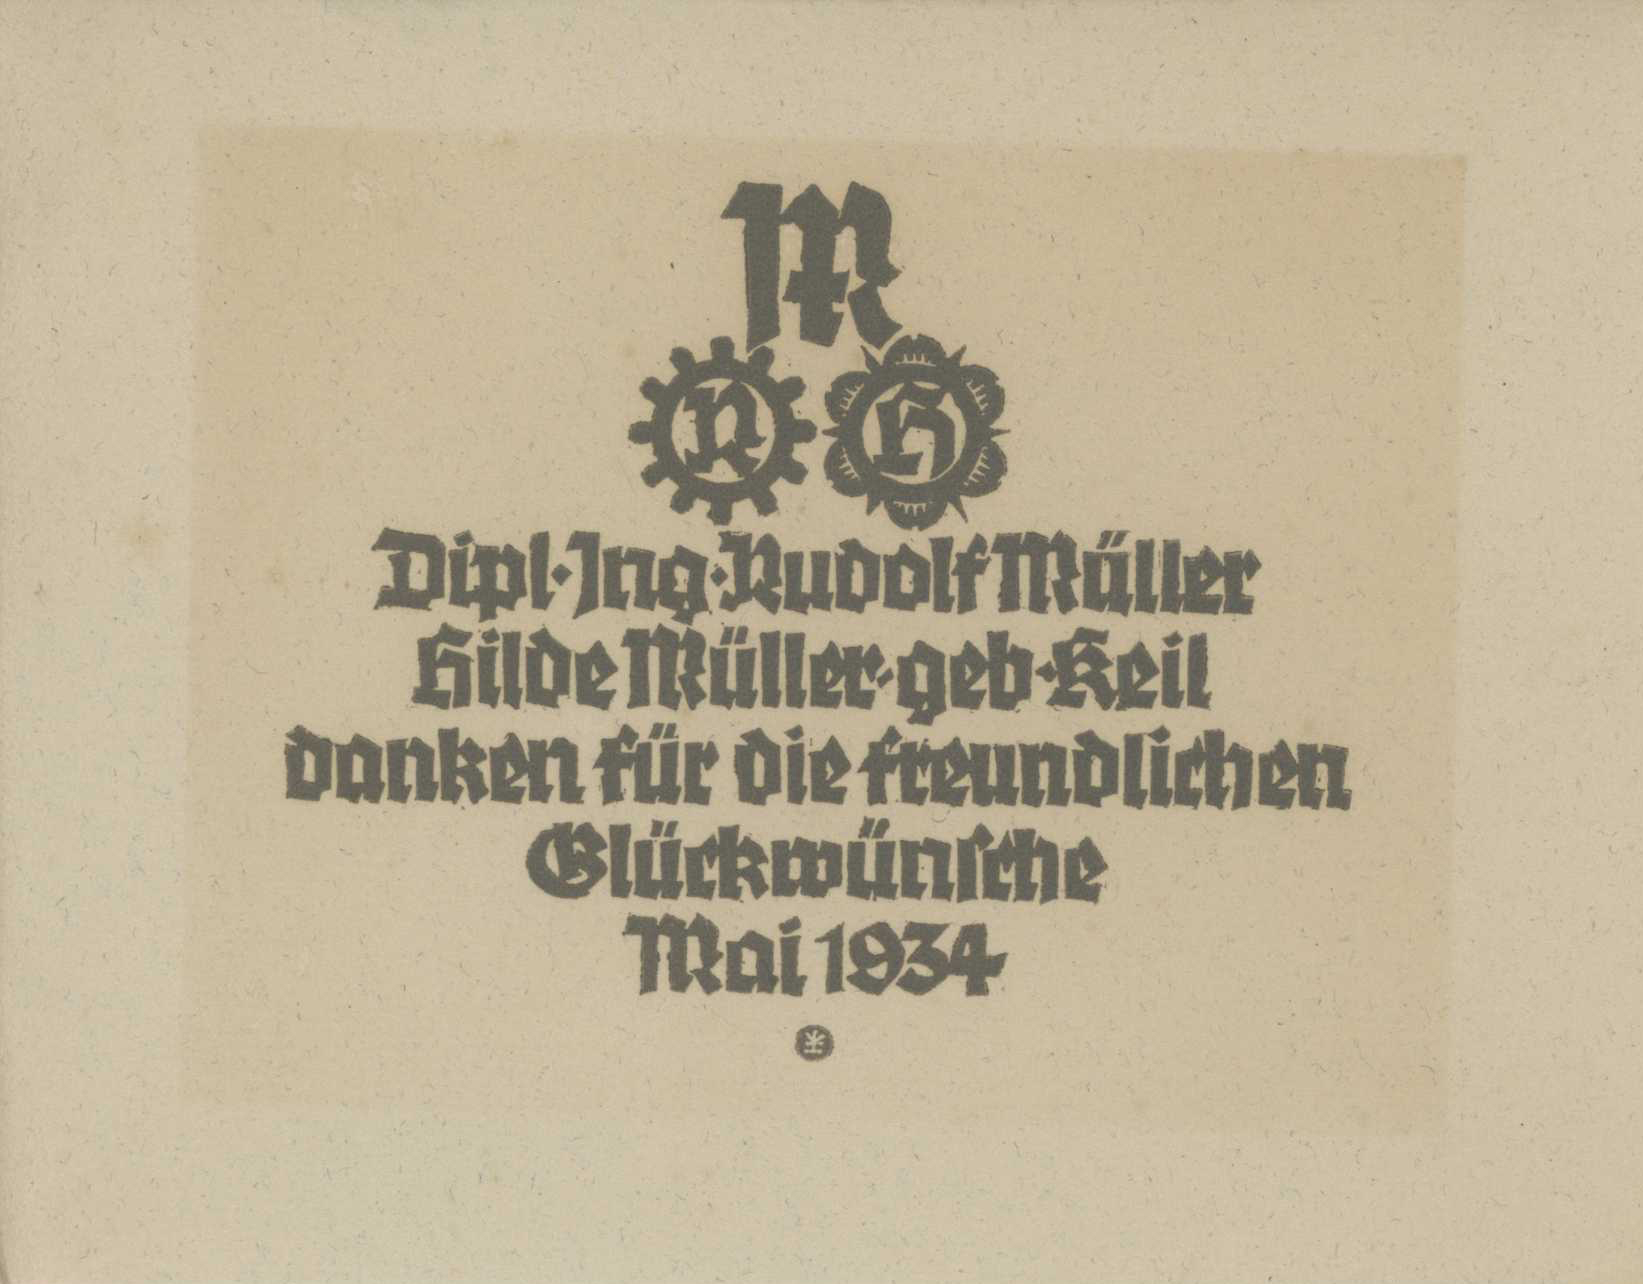 Featured image for “Freunlichen Gluckwunsche 1934 - Rudolf Müller”